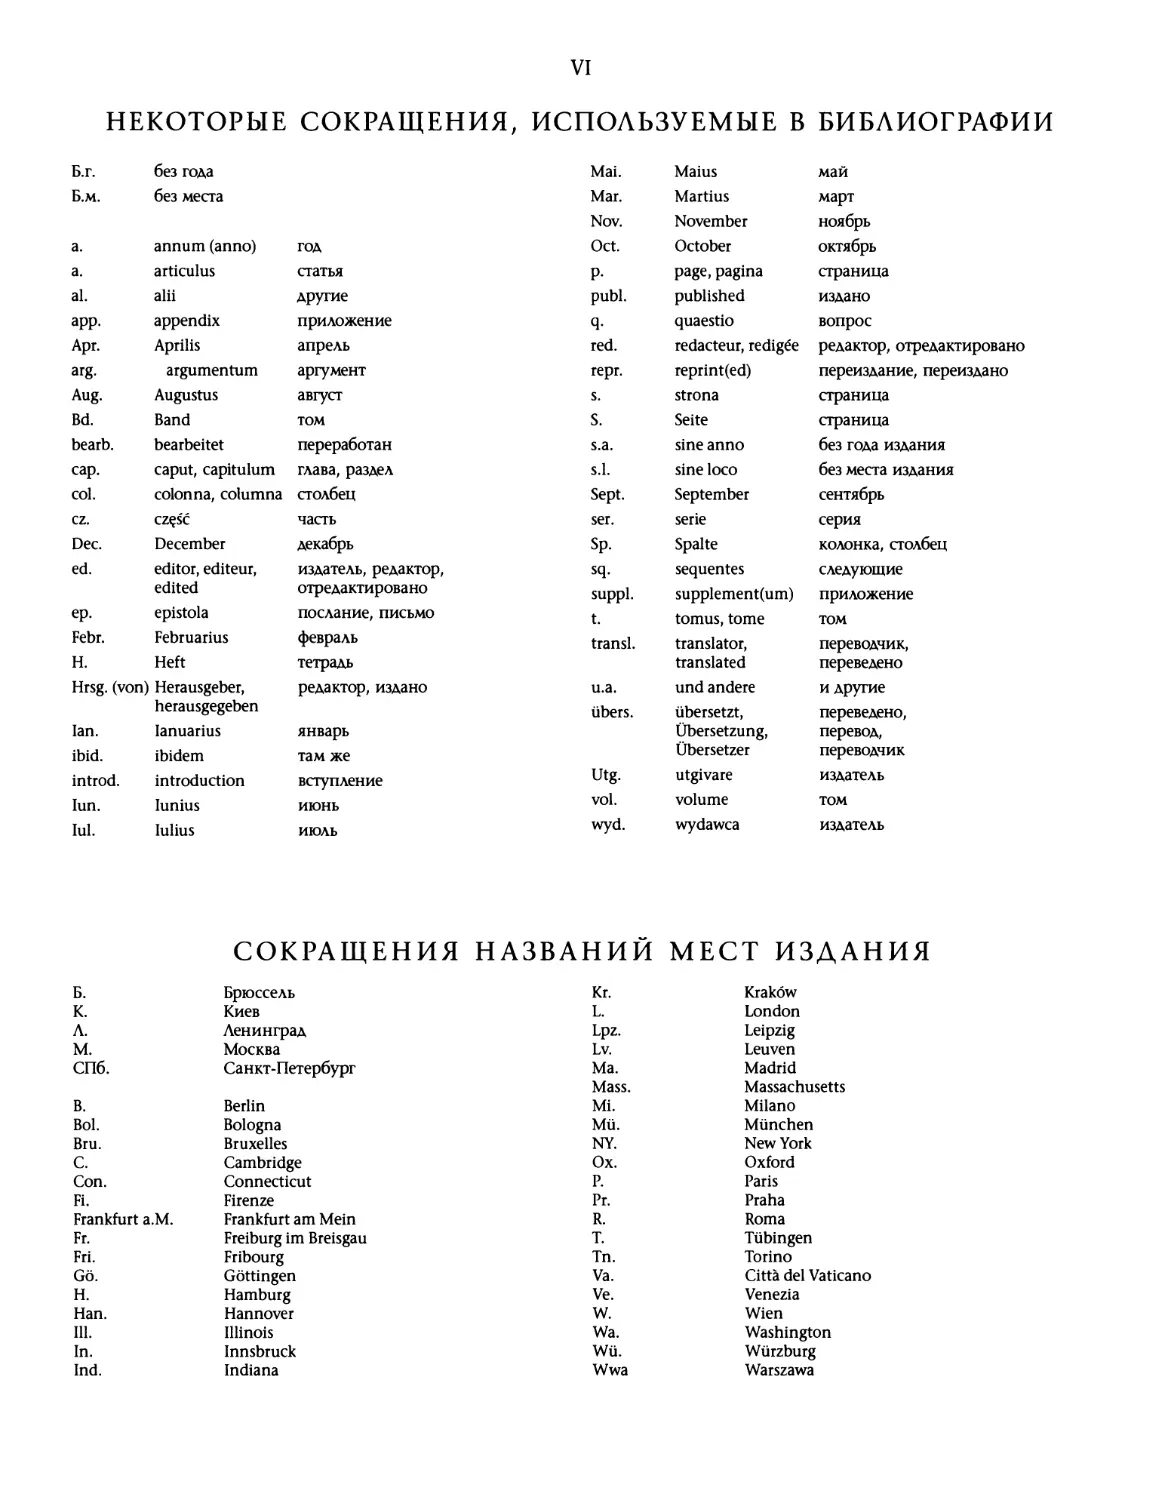 Некоторые сокращения, используемые в библиографии
Сокращения названий мест издания